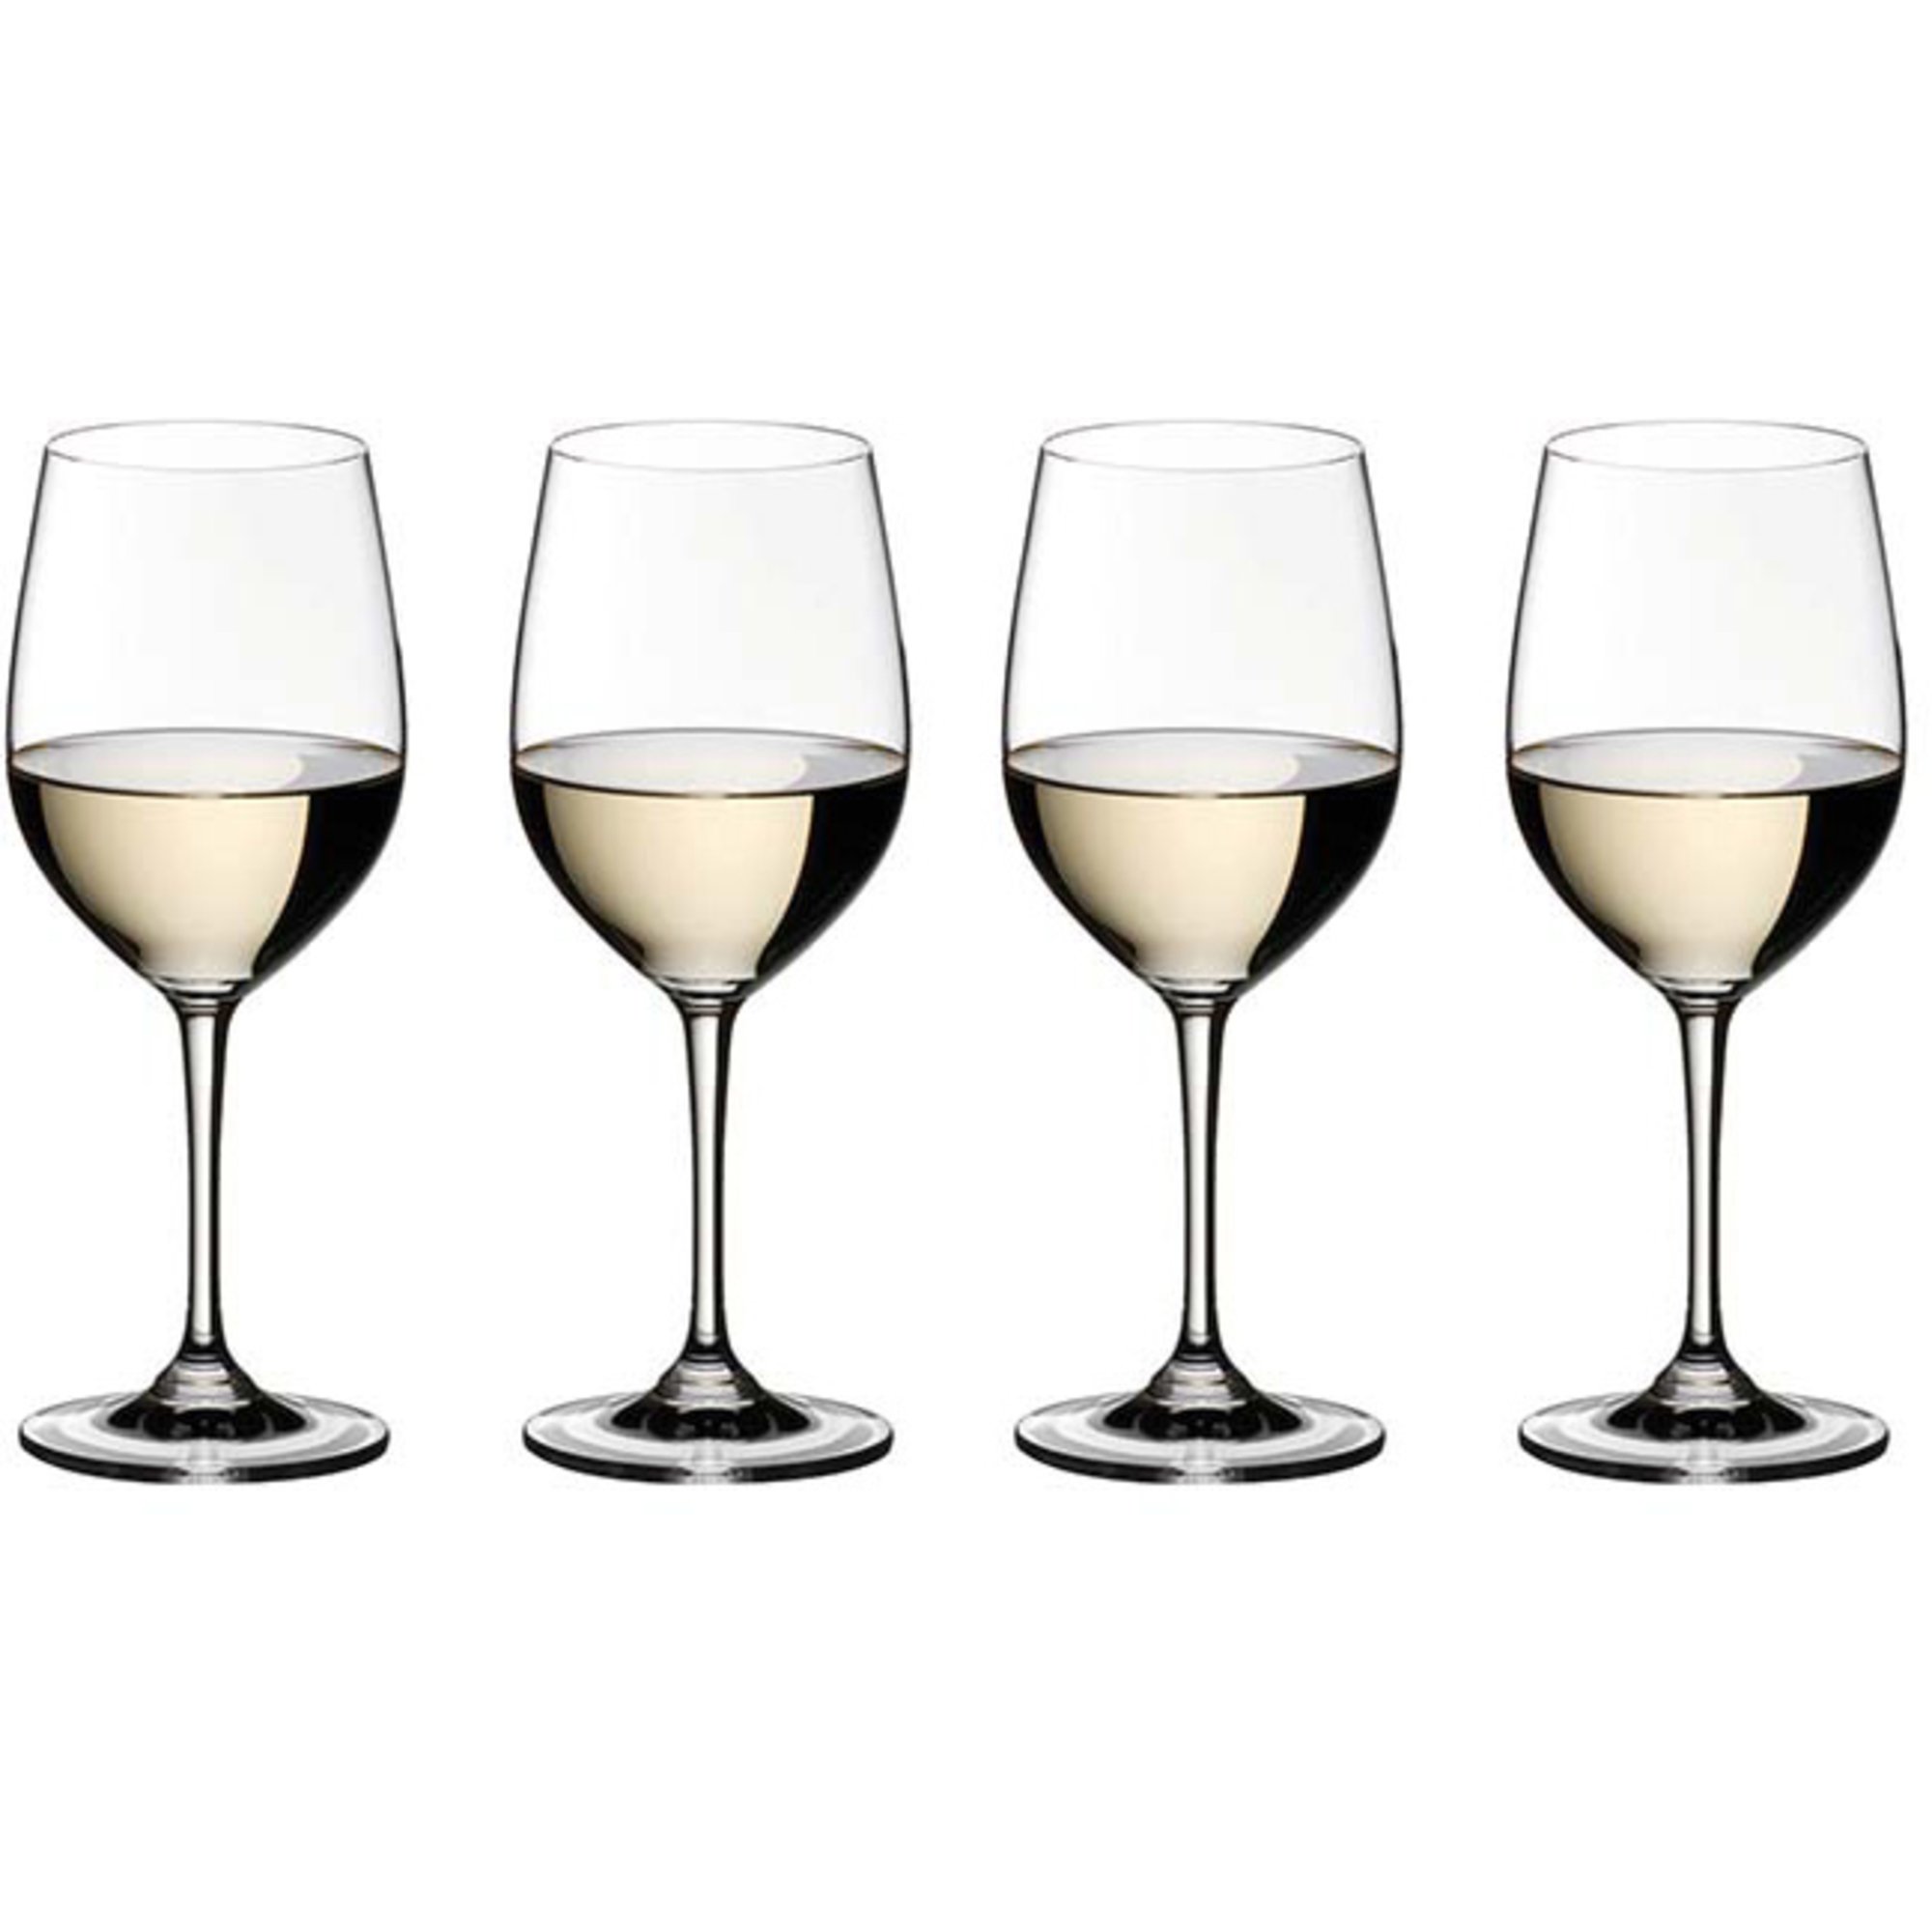 Riedel Vinum viognier/chardonnay vinglass 4-pack